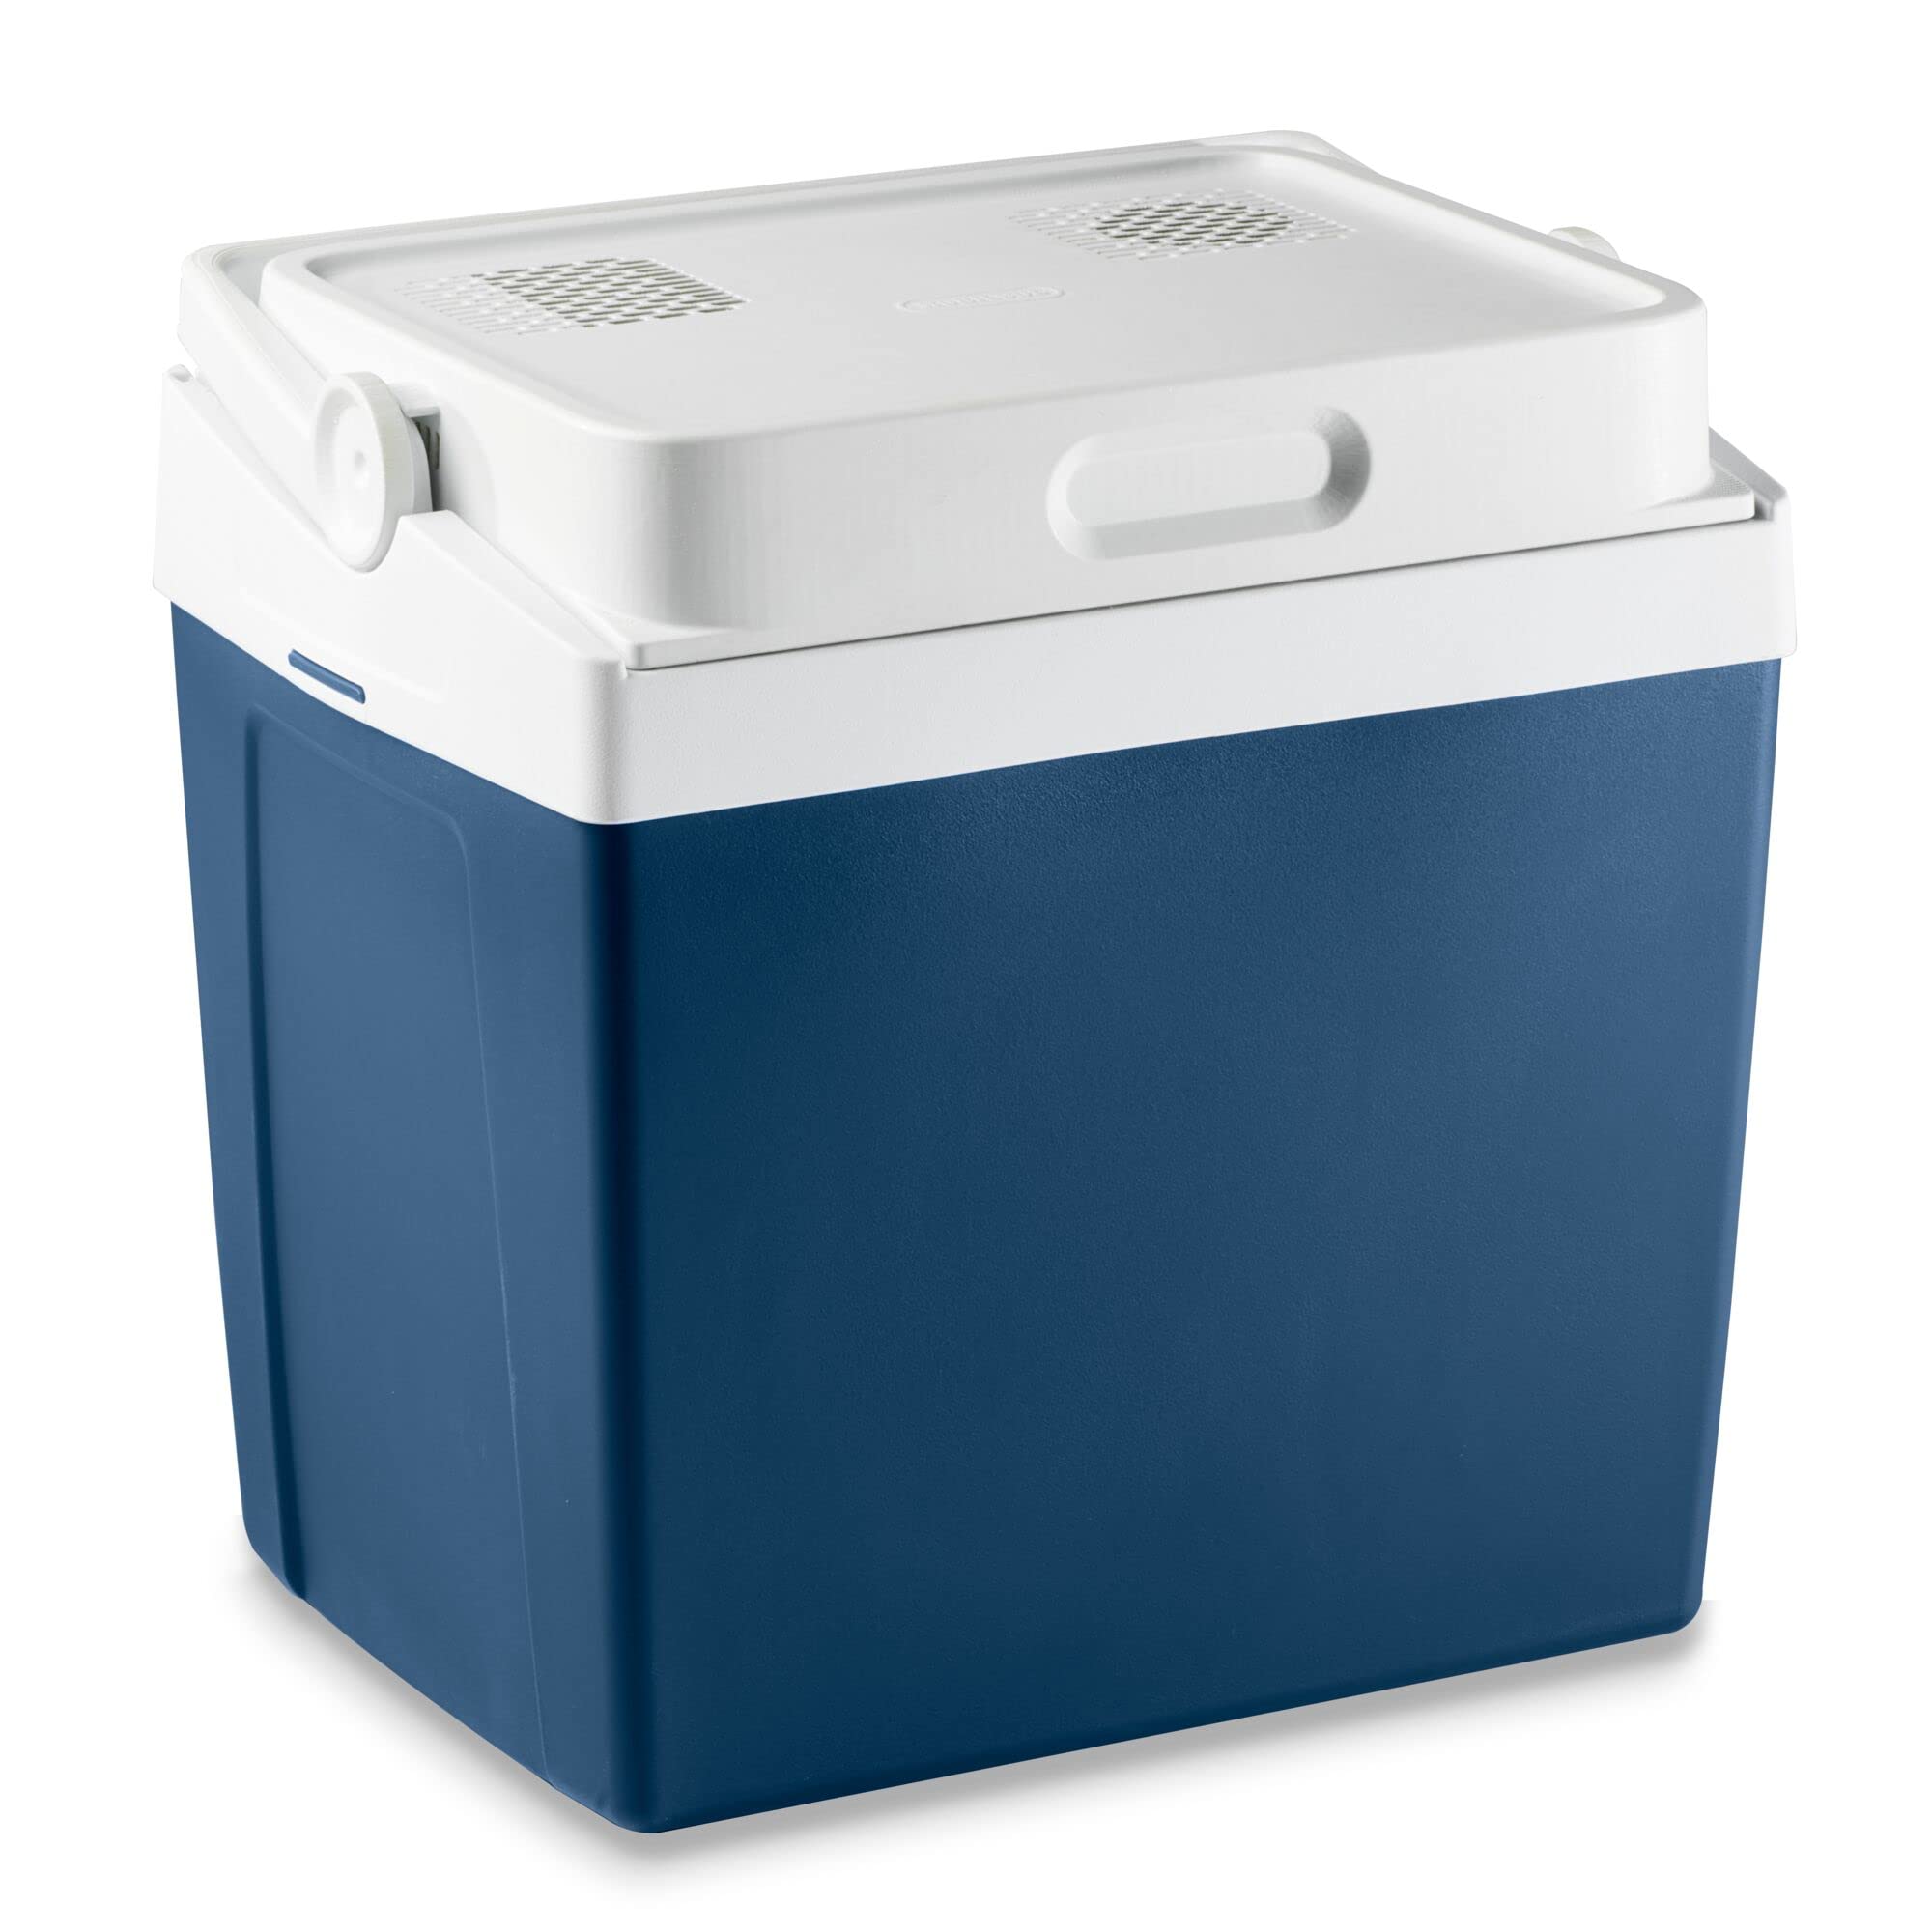 Mobicool Elektrische Kühlbox MV26 DC, elektrisch, tragbar, blau, Fassungsvermögen 25 l, 12-V-Anschluss für Zigarettenanzünder, Kühlung bis zu 17 °C unter Raumtemperatur